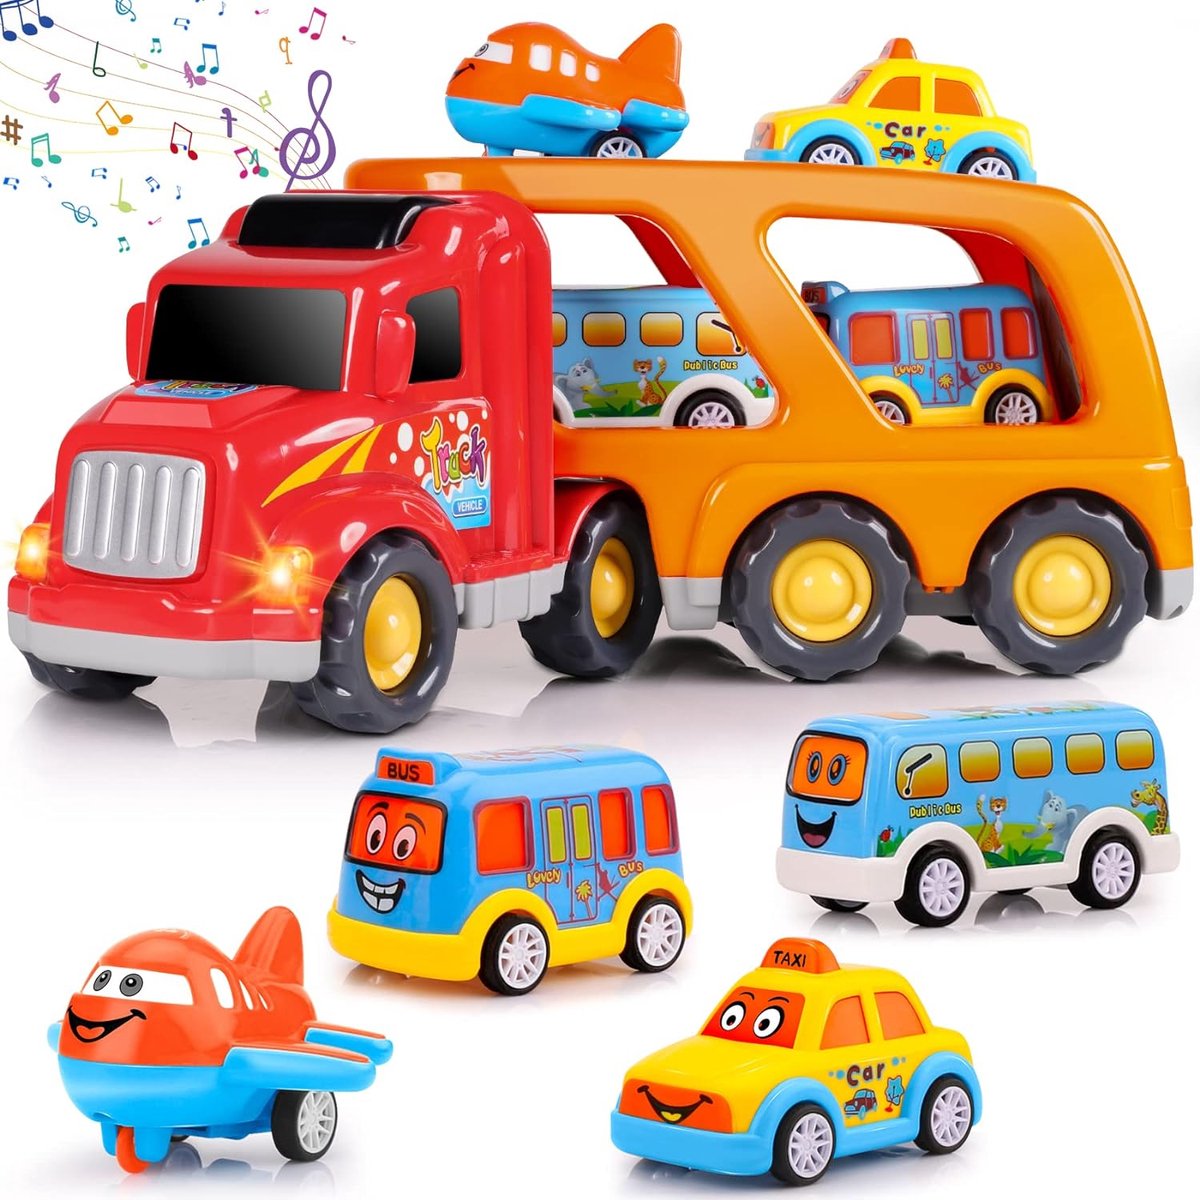 Kinderspeelgoedauto voor jongens van 1, 2, 3, 4, 5 en 6 jaar, jongensspeelgoed, 5-in-1 drager, speelgoed, trucks, peuters, leeftijd 2-4, geschikt voor Kerstmis en verjaardag, kindercadeau